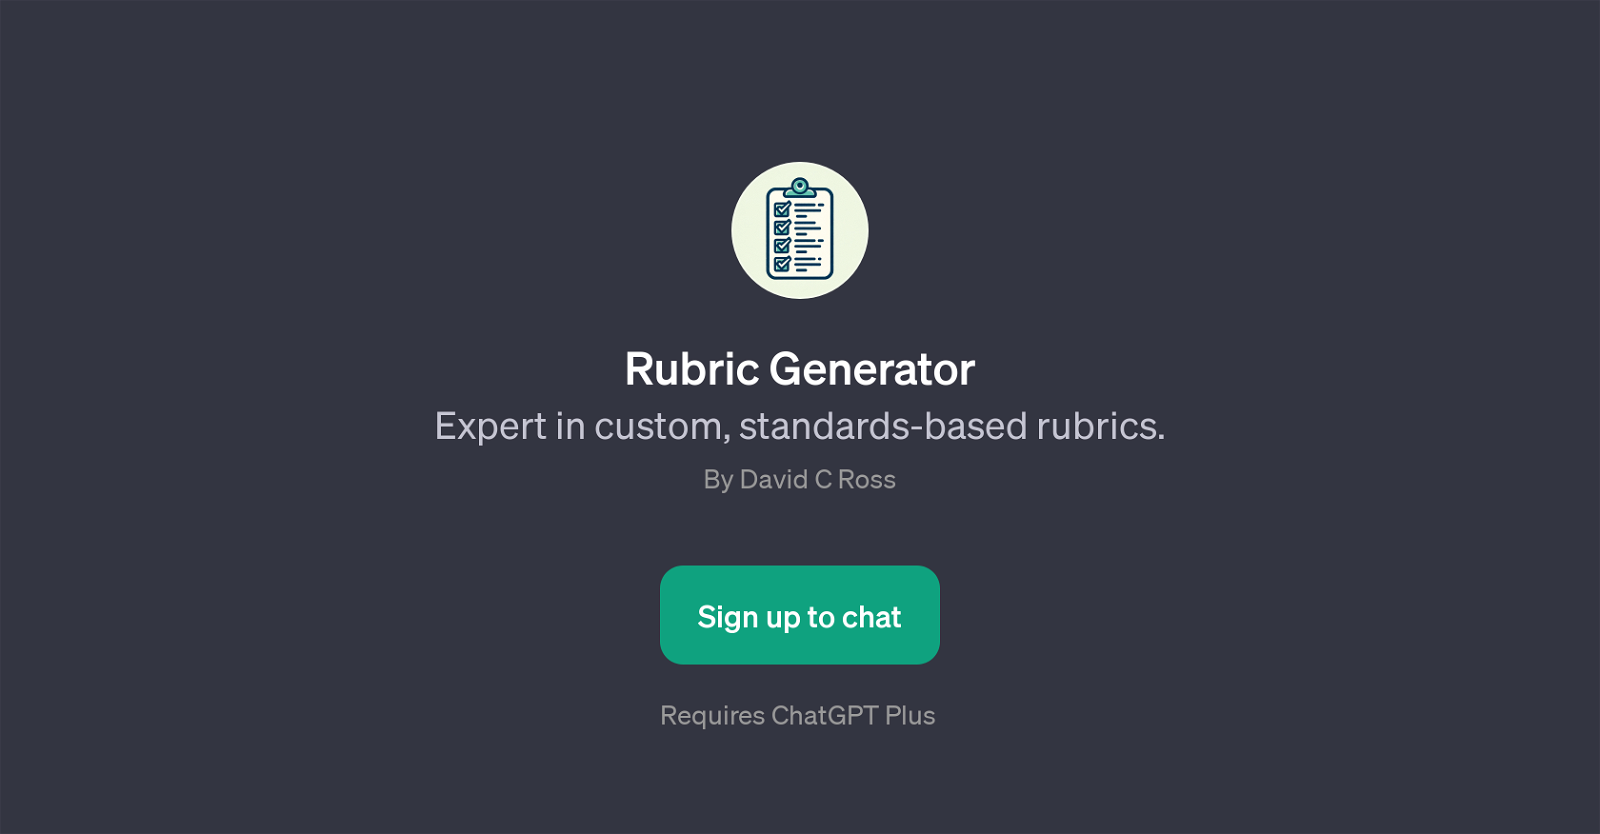 Rubric Generator website